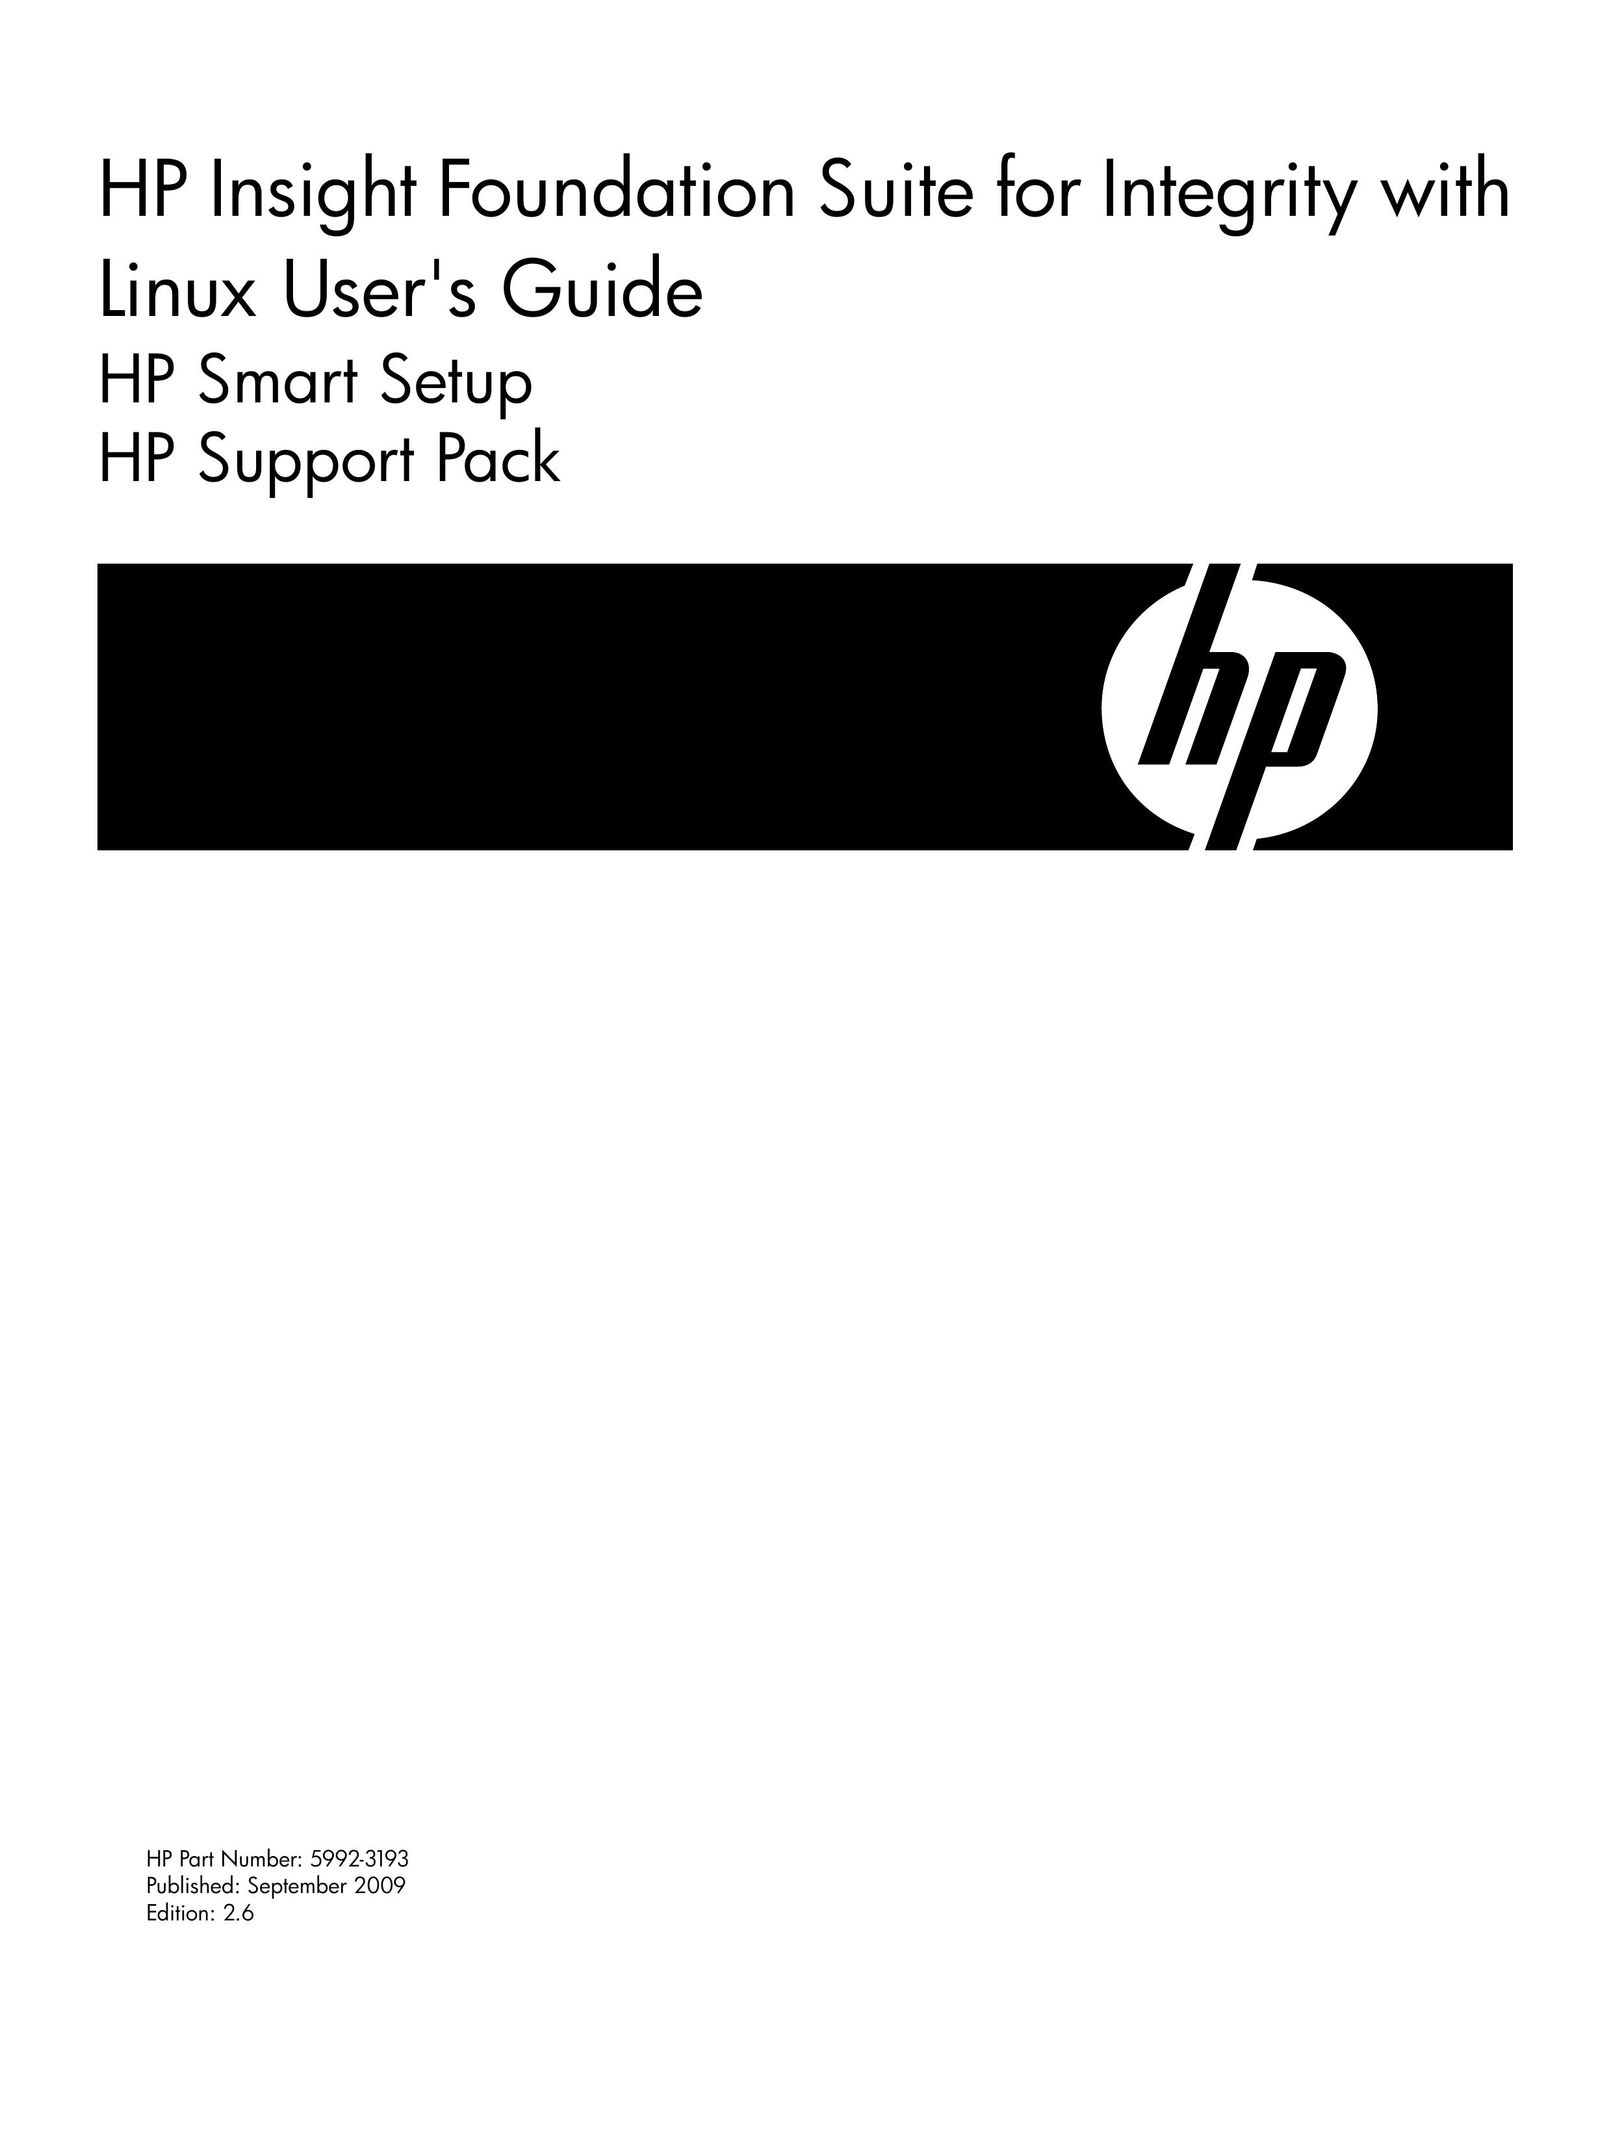 HP (Hewlett-Packard) 5992-3193 Computer Accessories User Manual